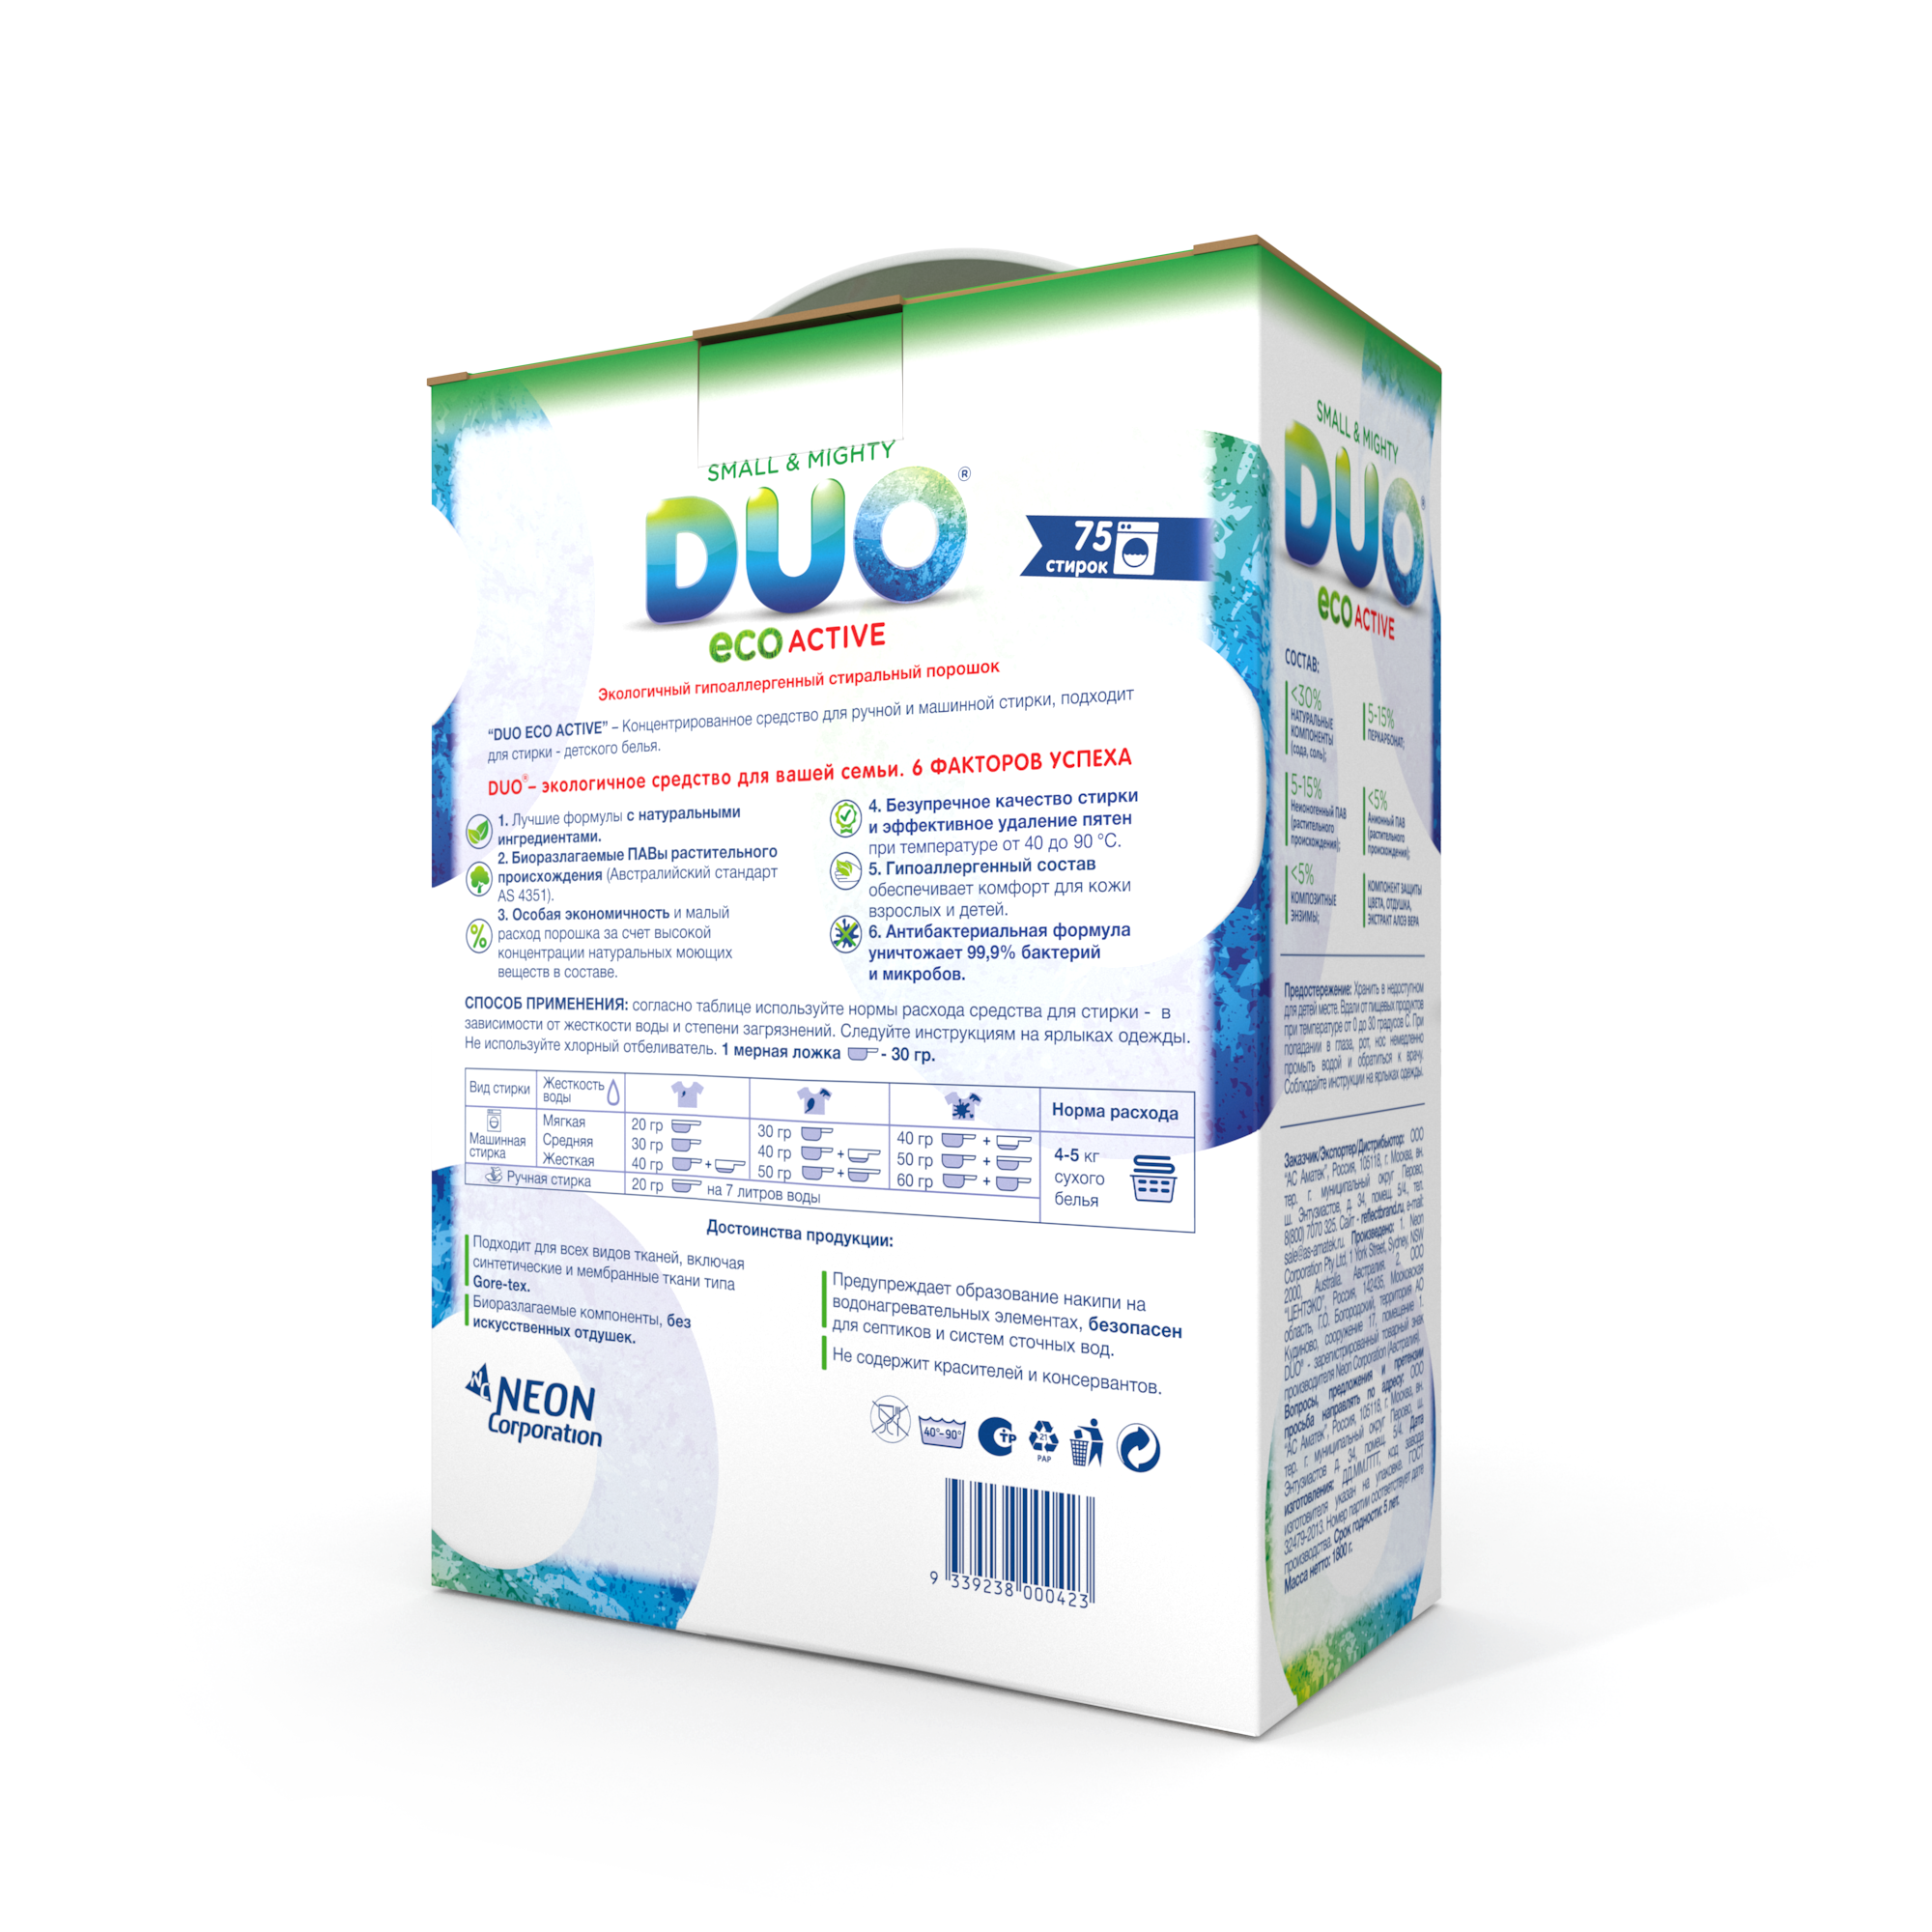 Стиральный порошок DUO Еco Active концентрированный для цветного и белого белья 1800 г 75 стирок - фото 4